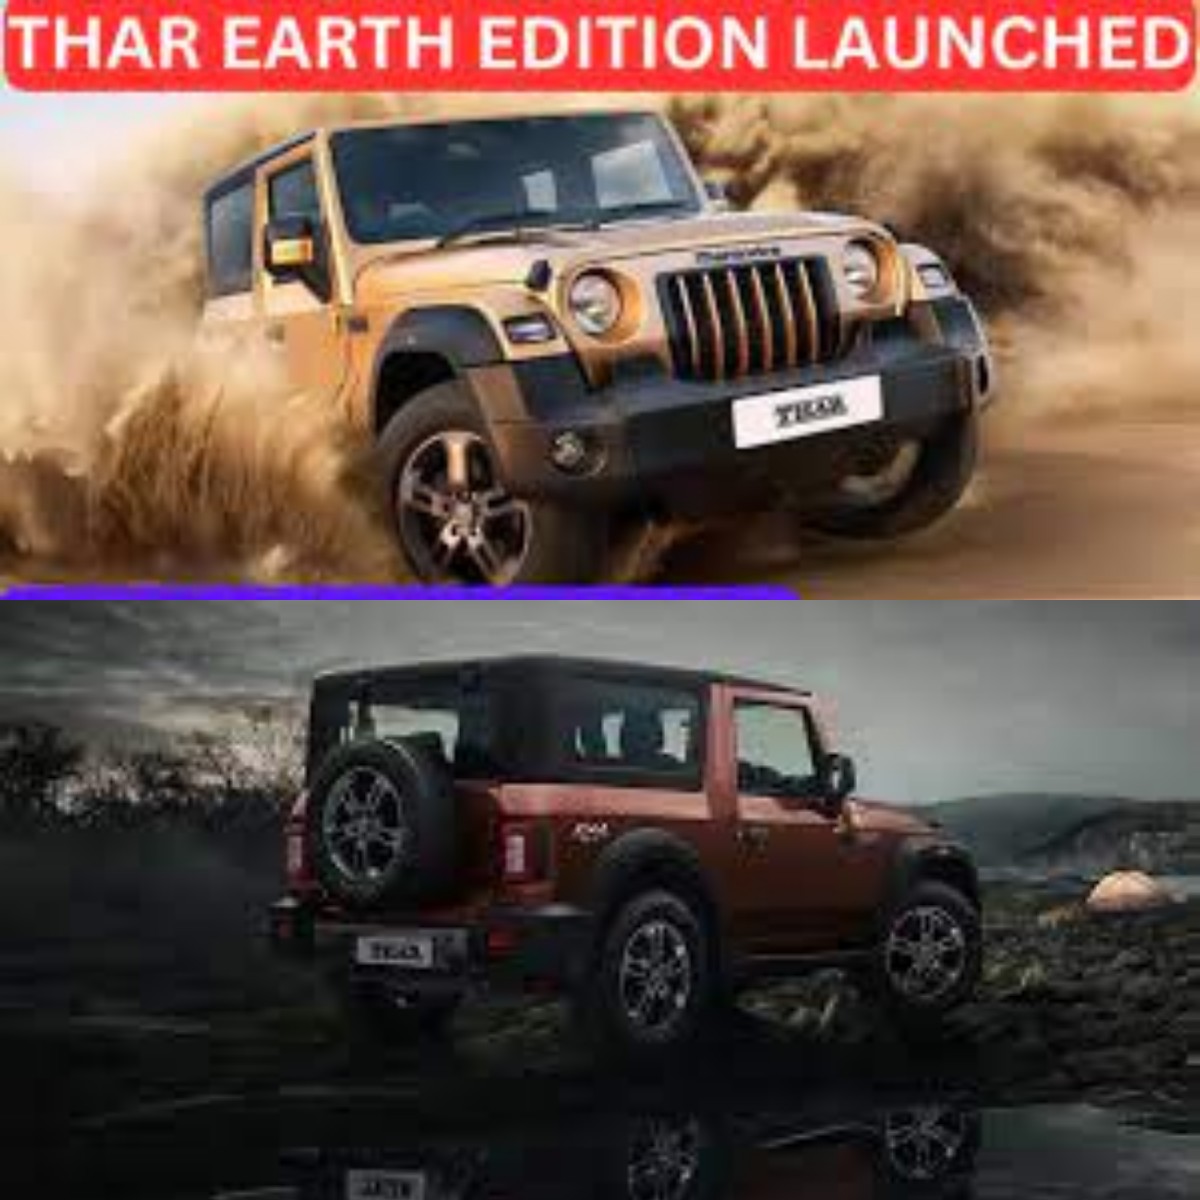 Hadirkan Performa Terbaru! Inilah Kemewahan Off-Road Thar Earth Edition 